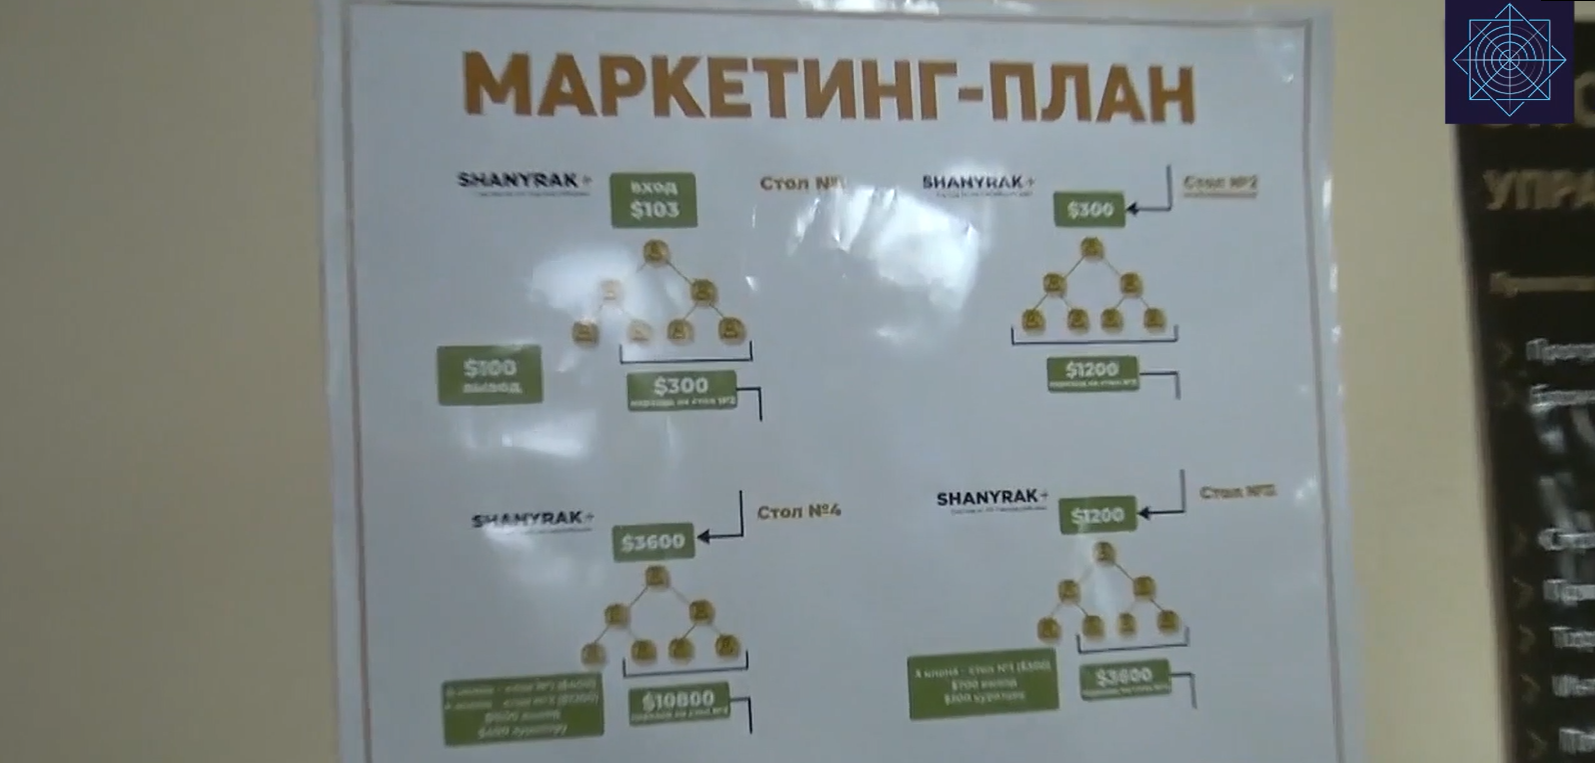 В Северо-Казахстанской области организаторы финпирамиды привлекали средства граждан под видом жилищного кооператива